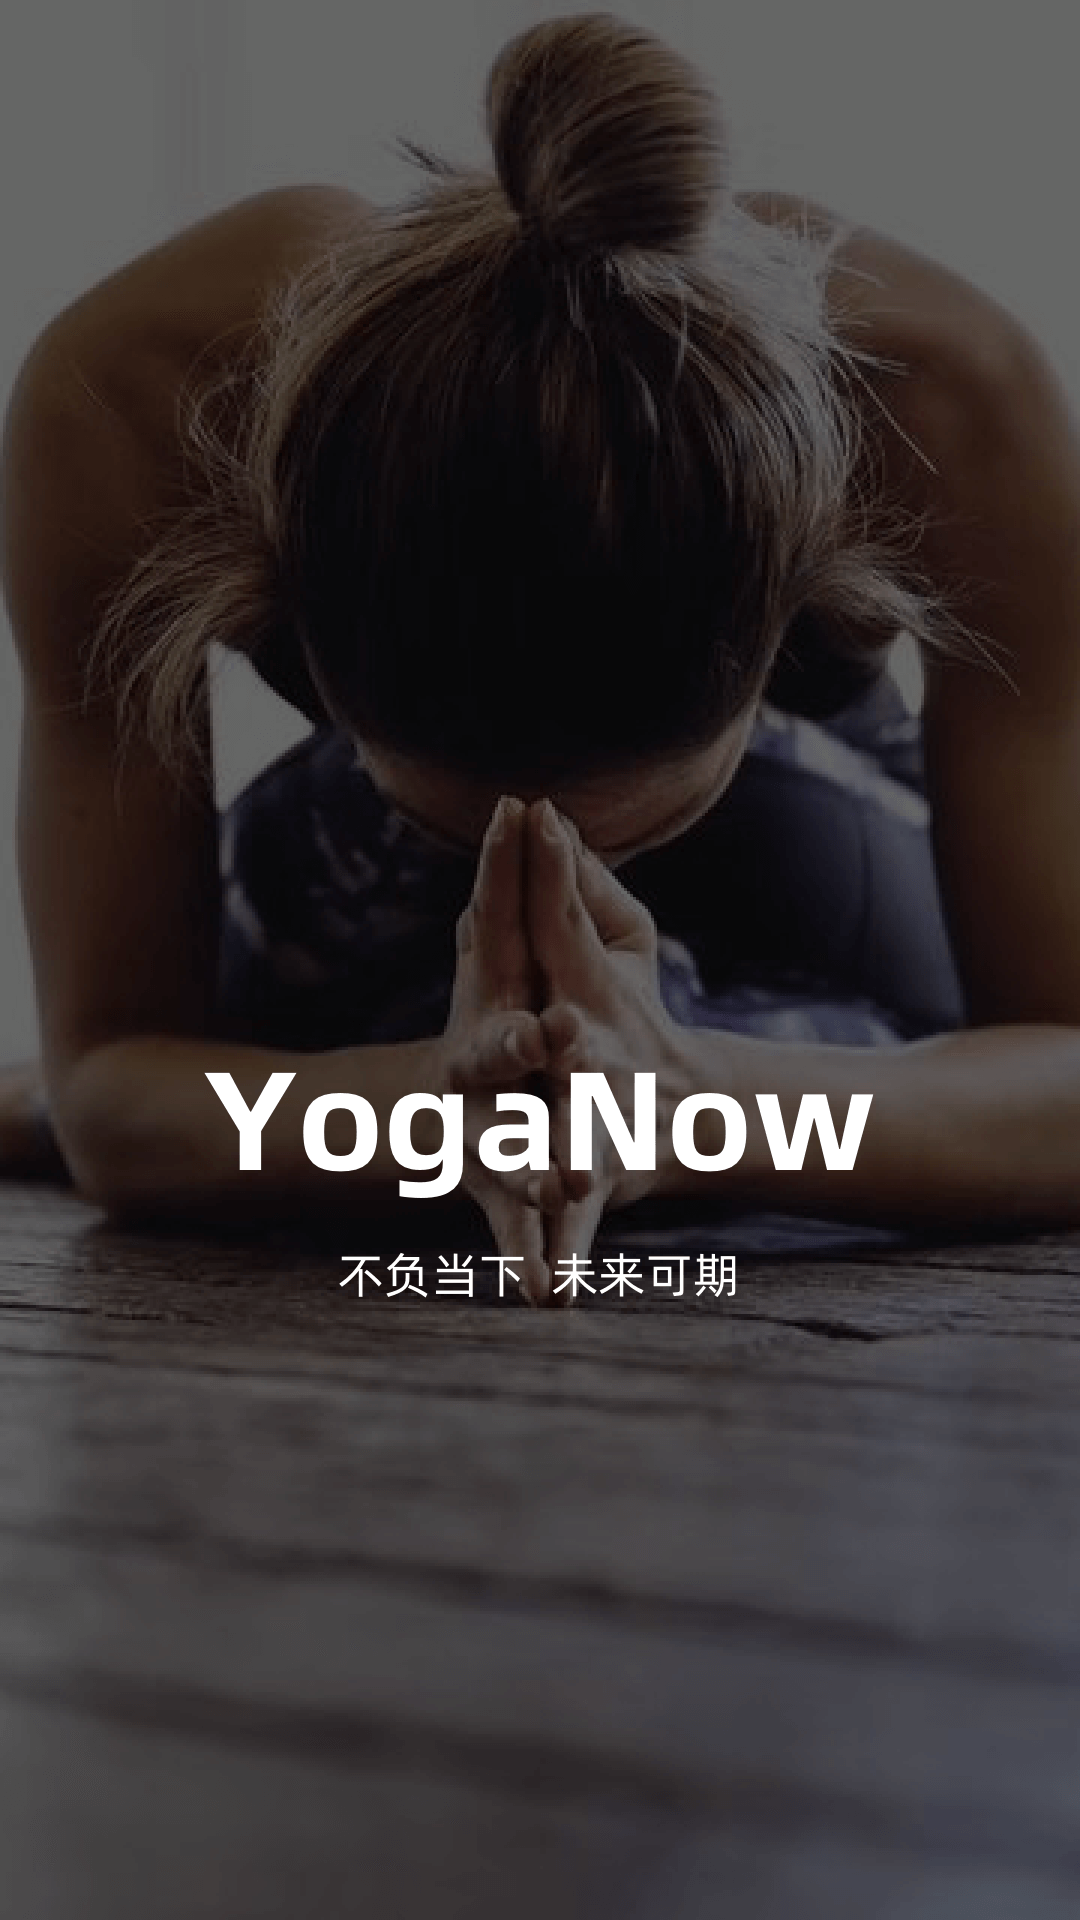 YogaNow软件